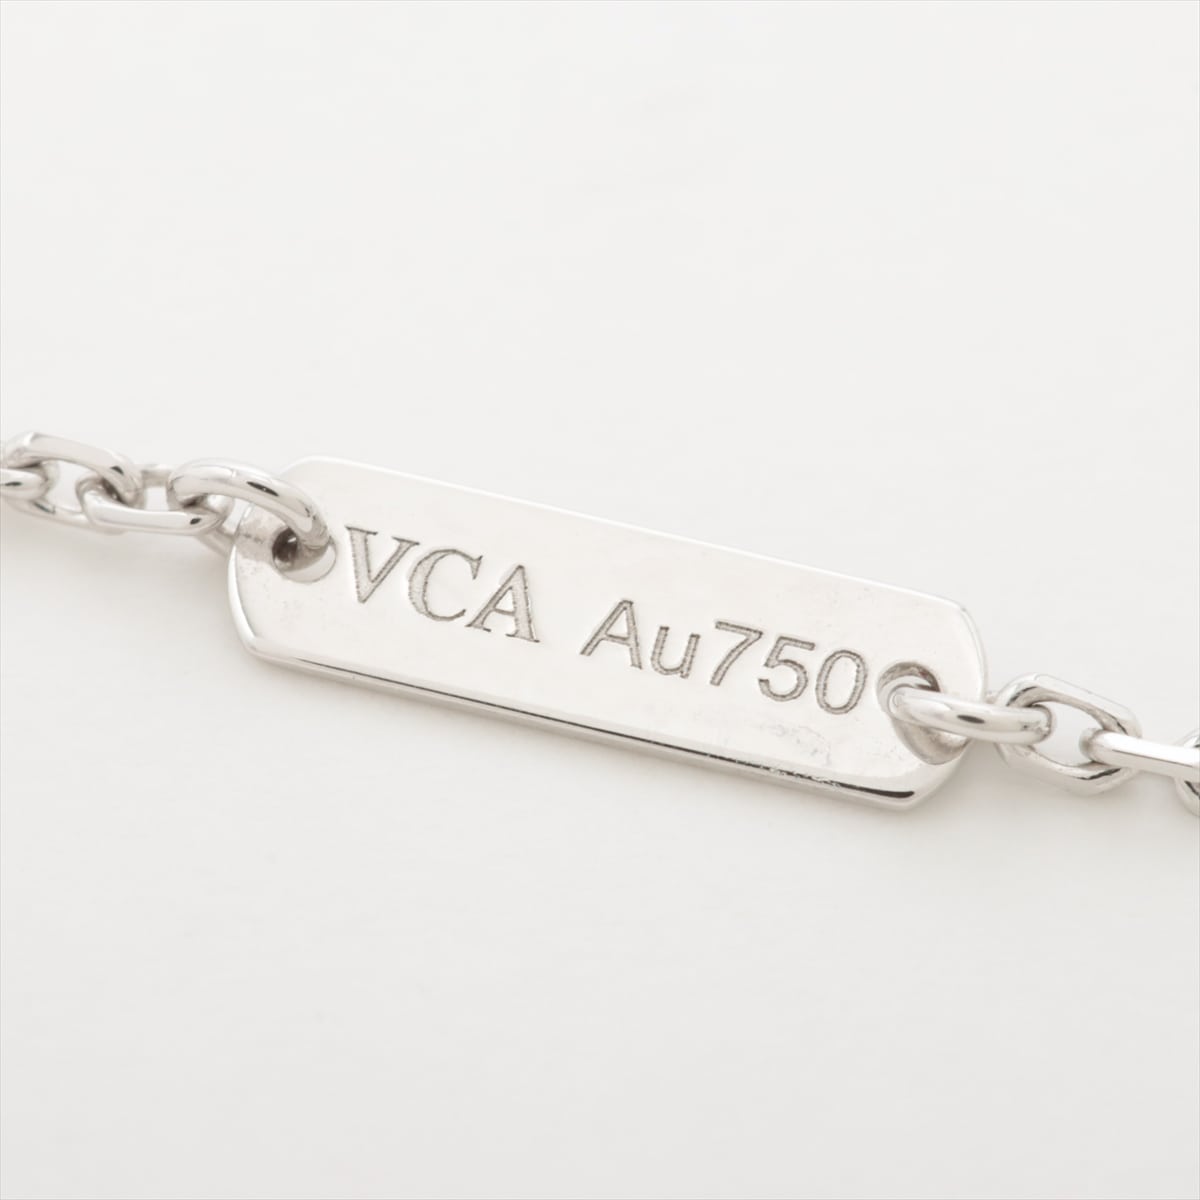 Vancliffe &amp; Arpels vintage Alhambra Seabler Diamond Necklace 750 (WG) 6.9g